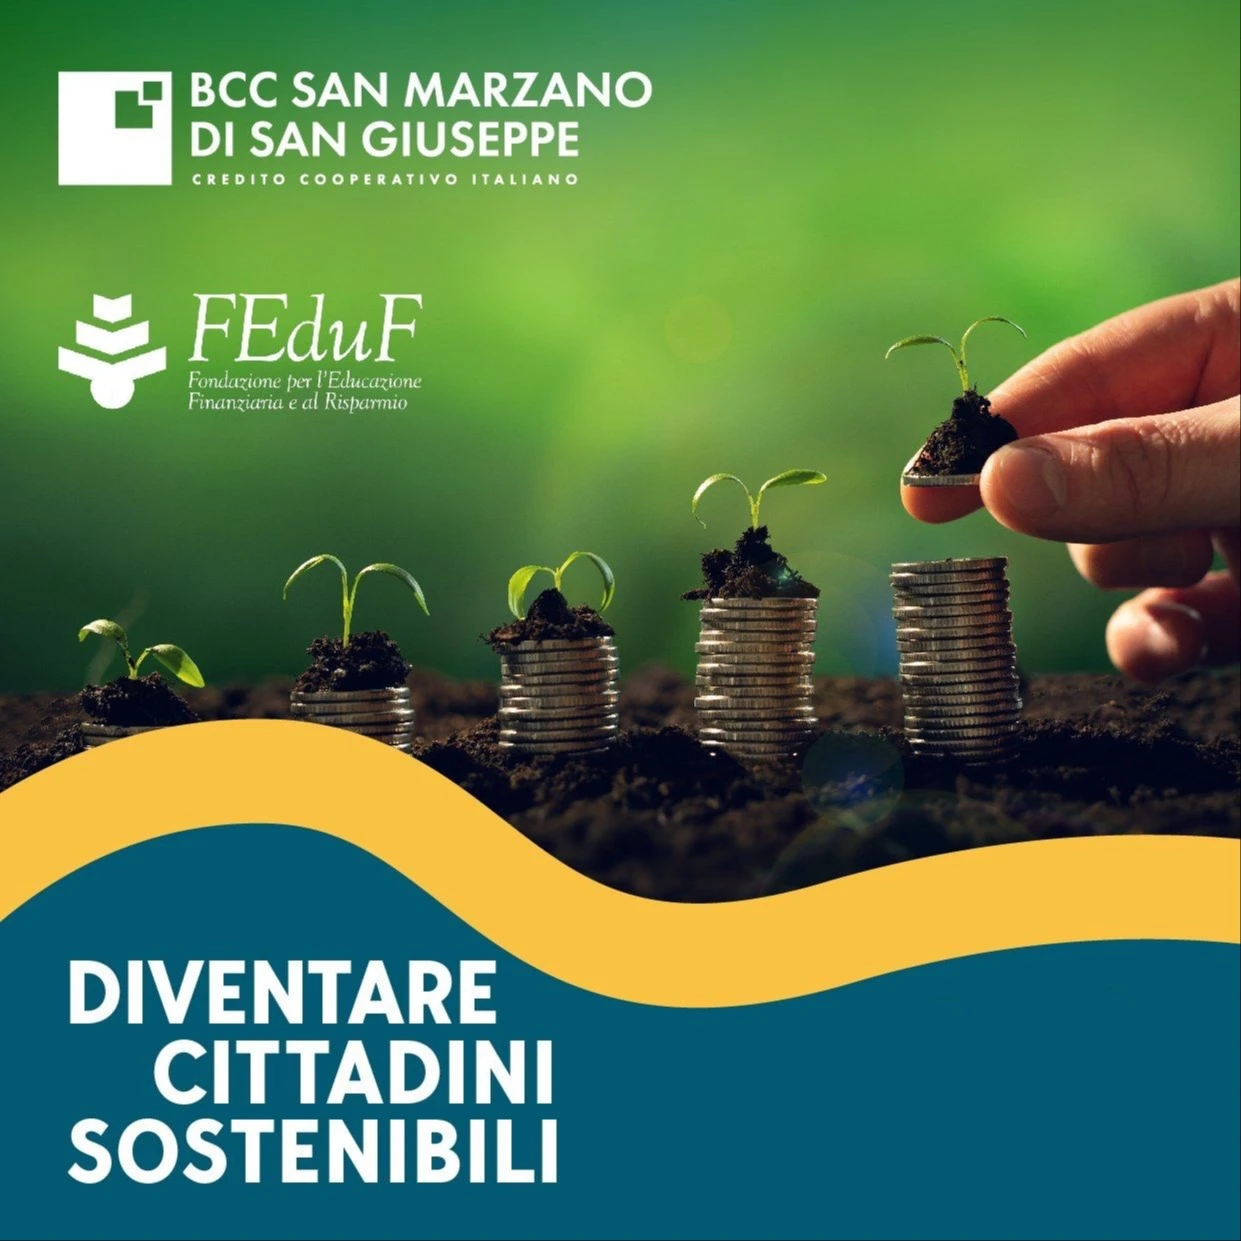 Educazione finanziaria: al via le iniziative di educazione finanziaria di BCC San Marzano e FEduF (ABI)